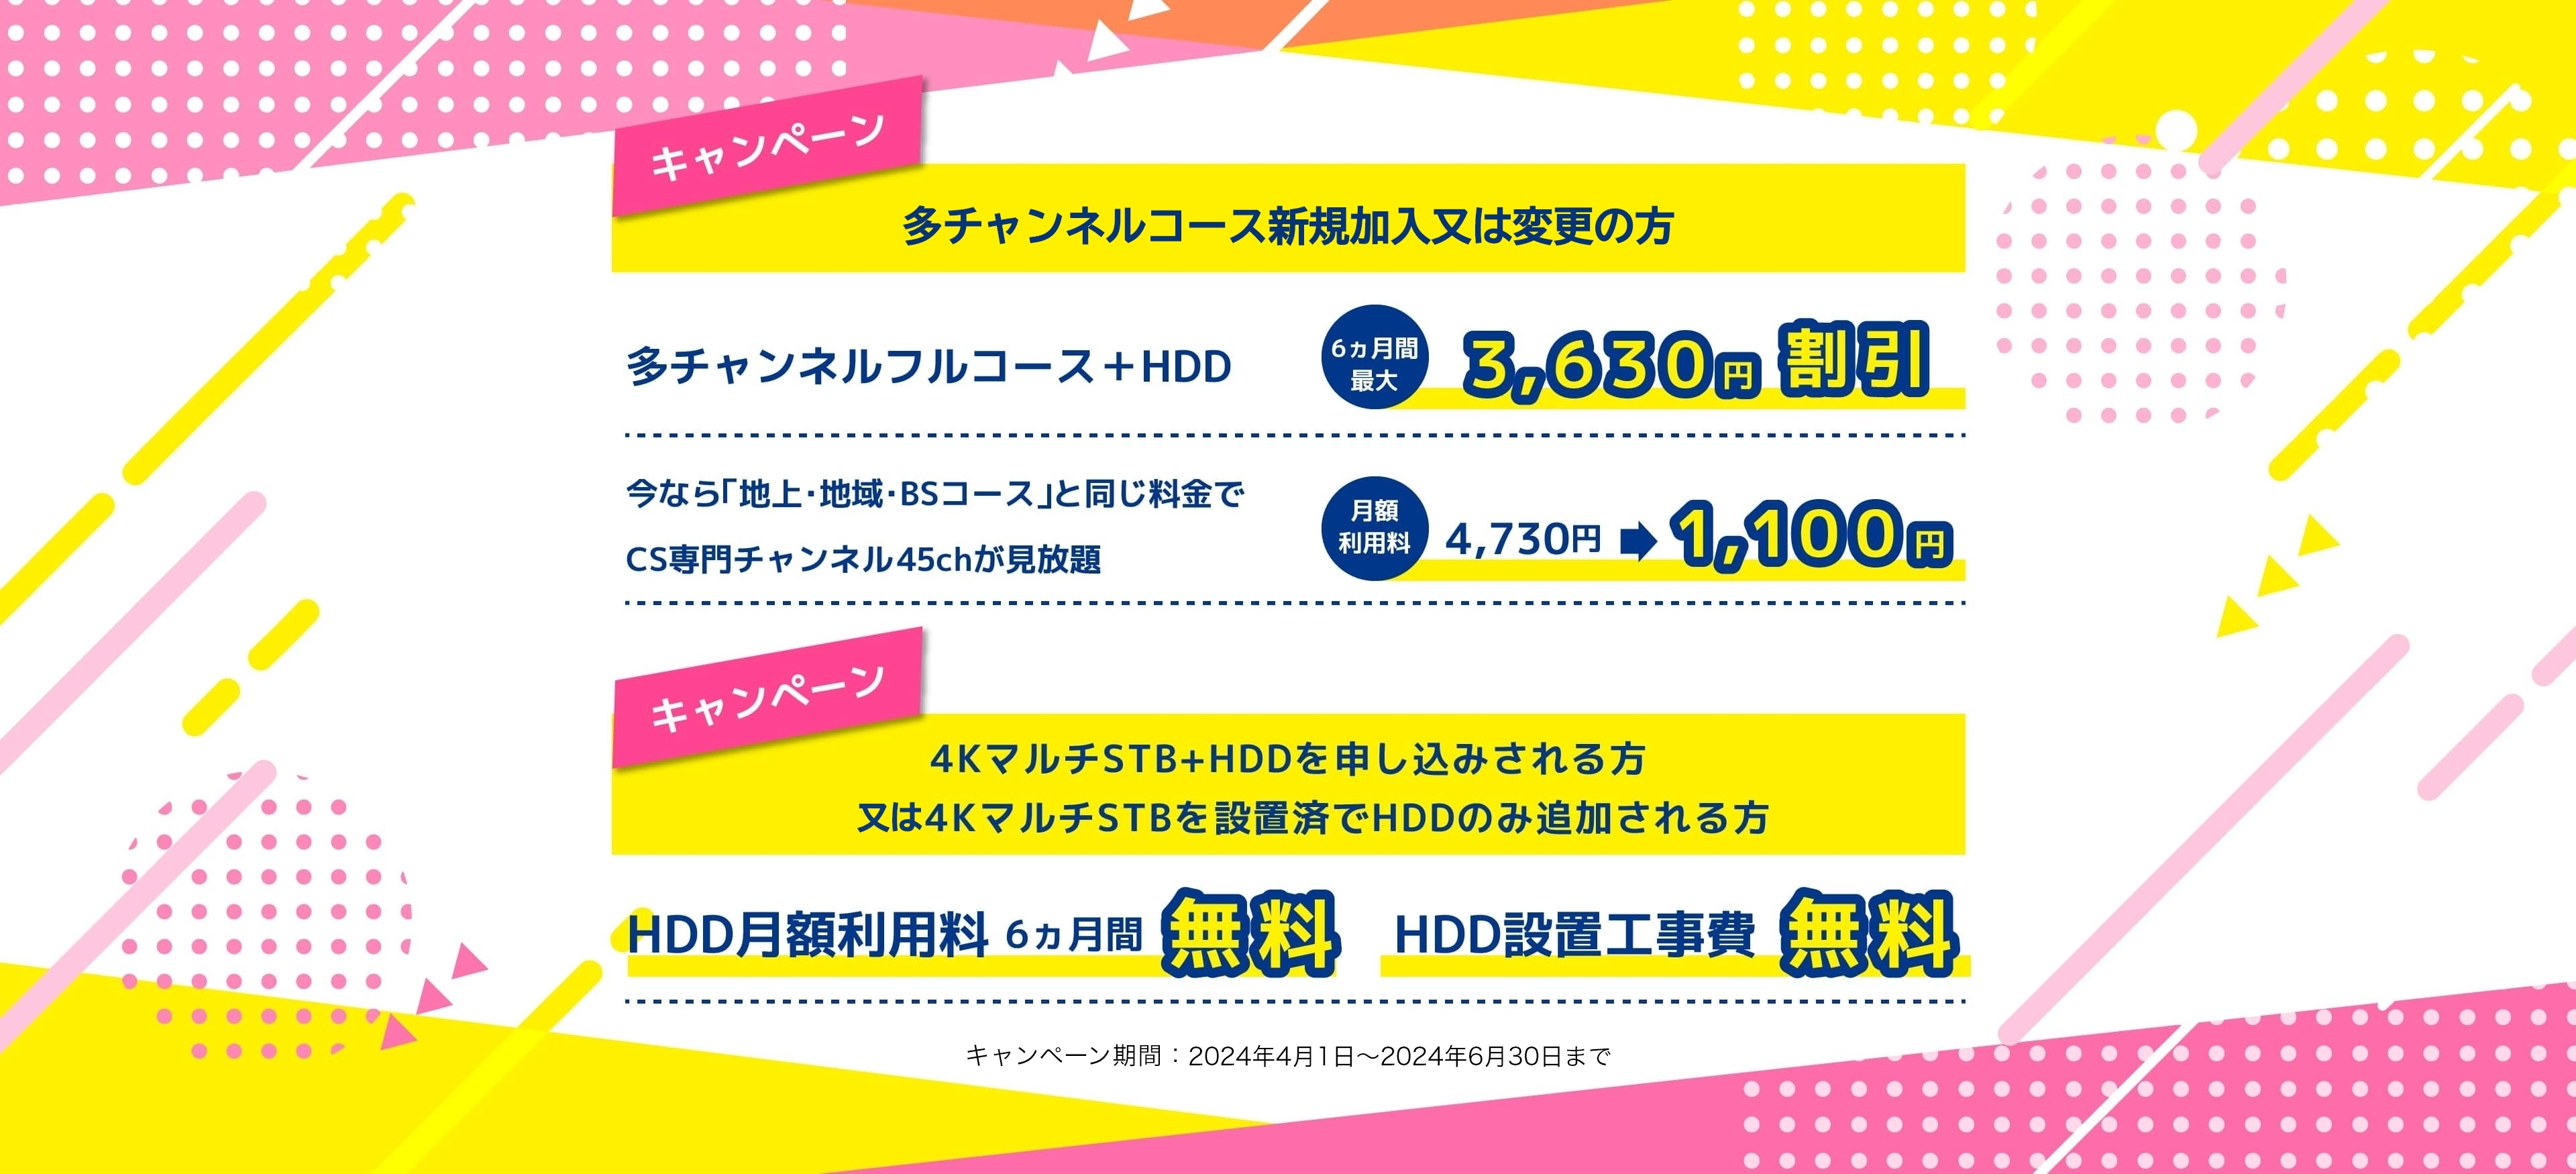 多チャンネルコース新規加入または変更の方 多チャンネルフルコース＋HDD 6ヵ月間最大3,630円割引